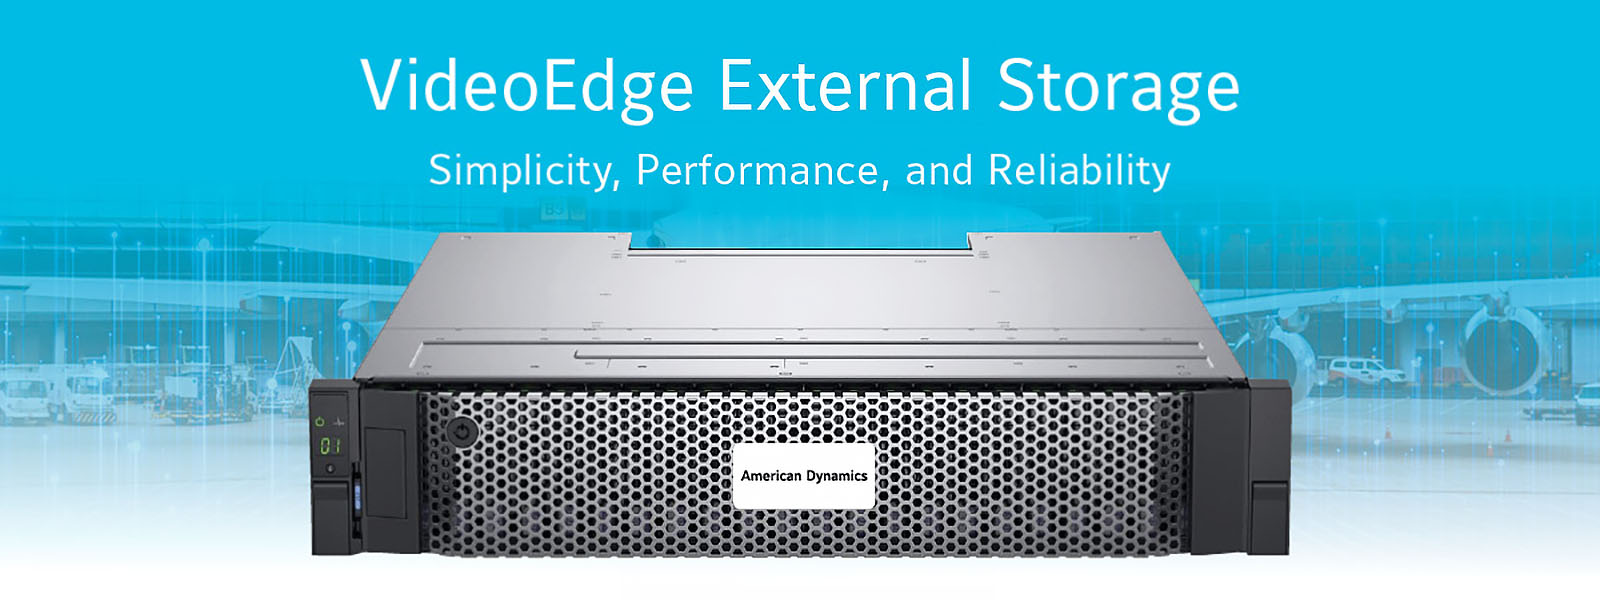 VideoEdge External Storage